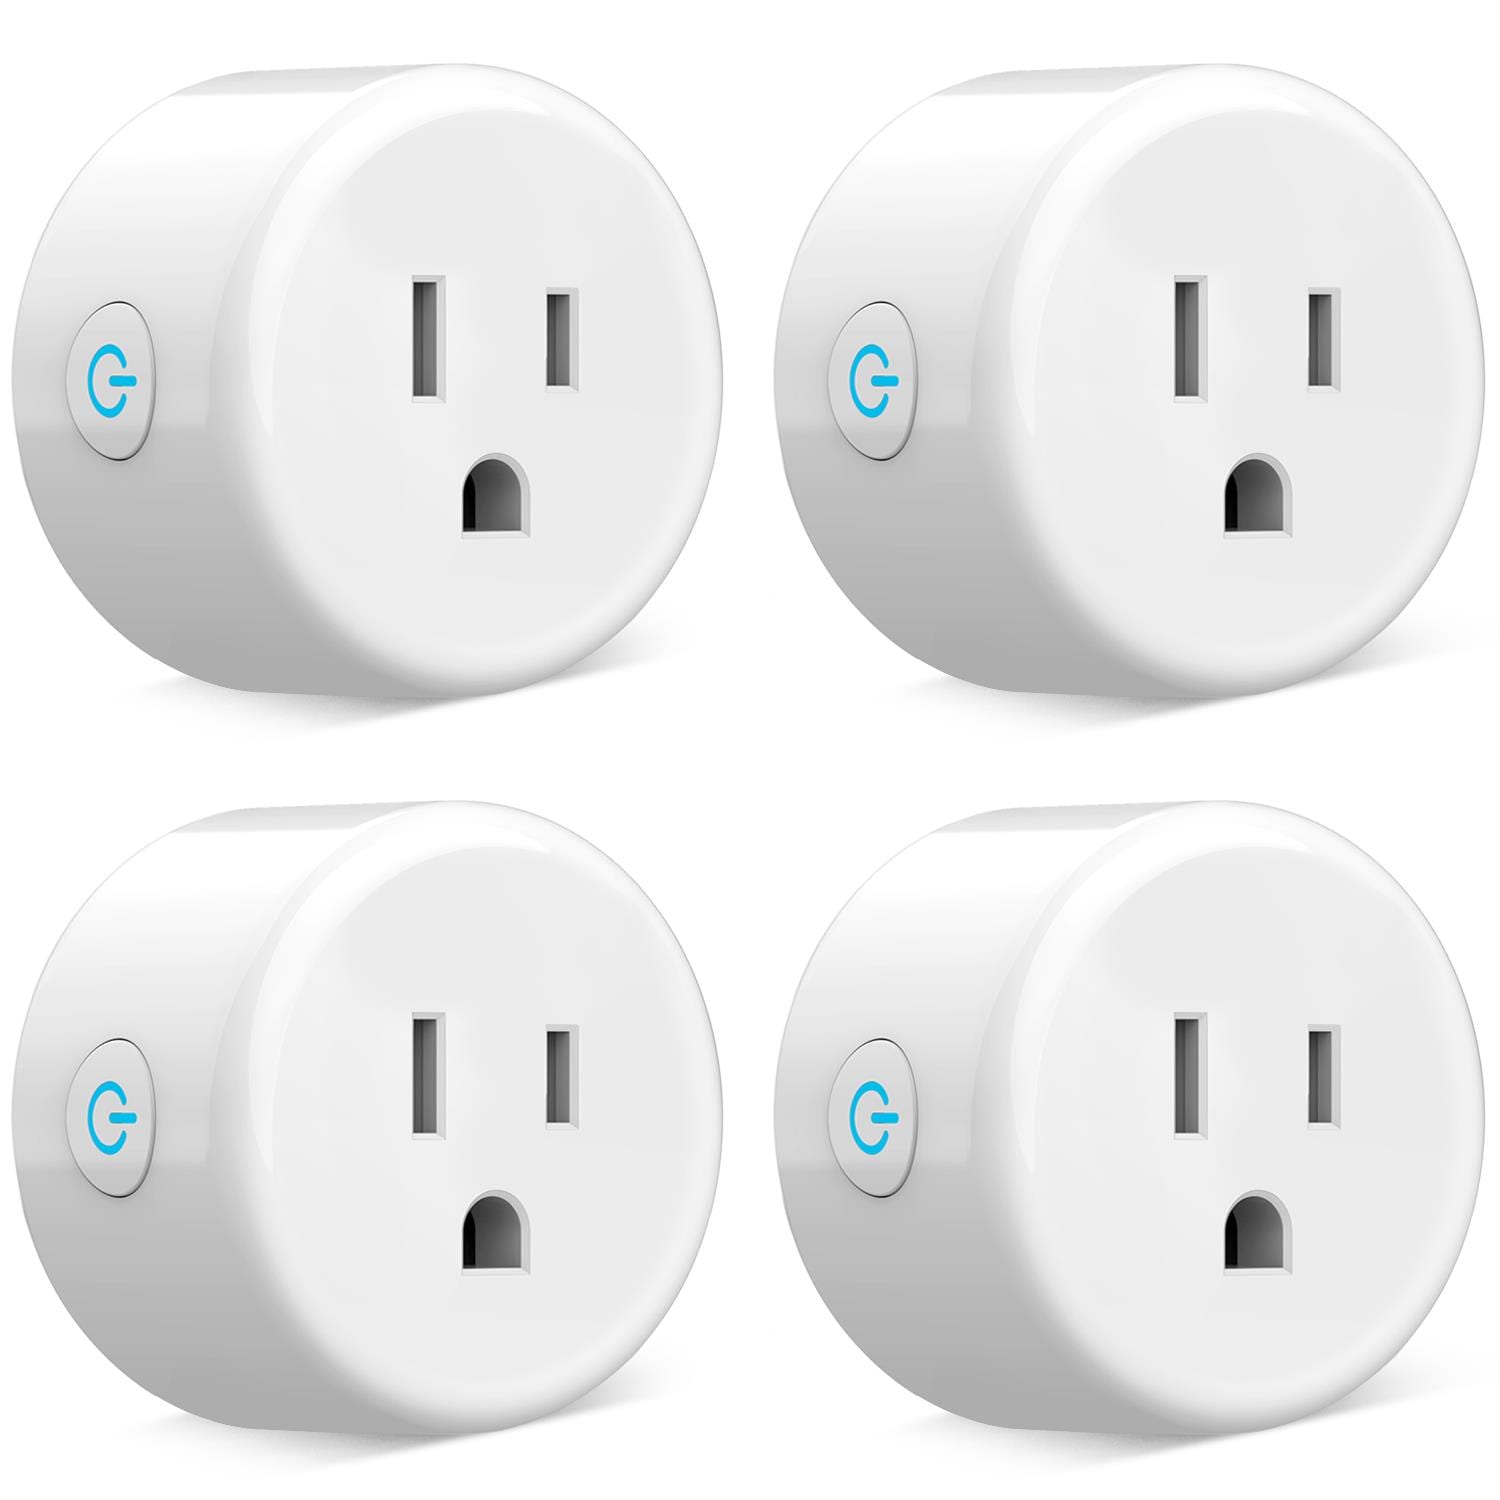 5GHz Smart Plug Review: Alexa Exioty Smart Plug